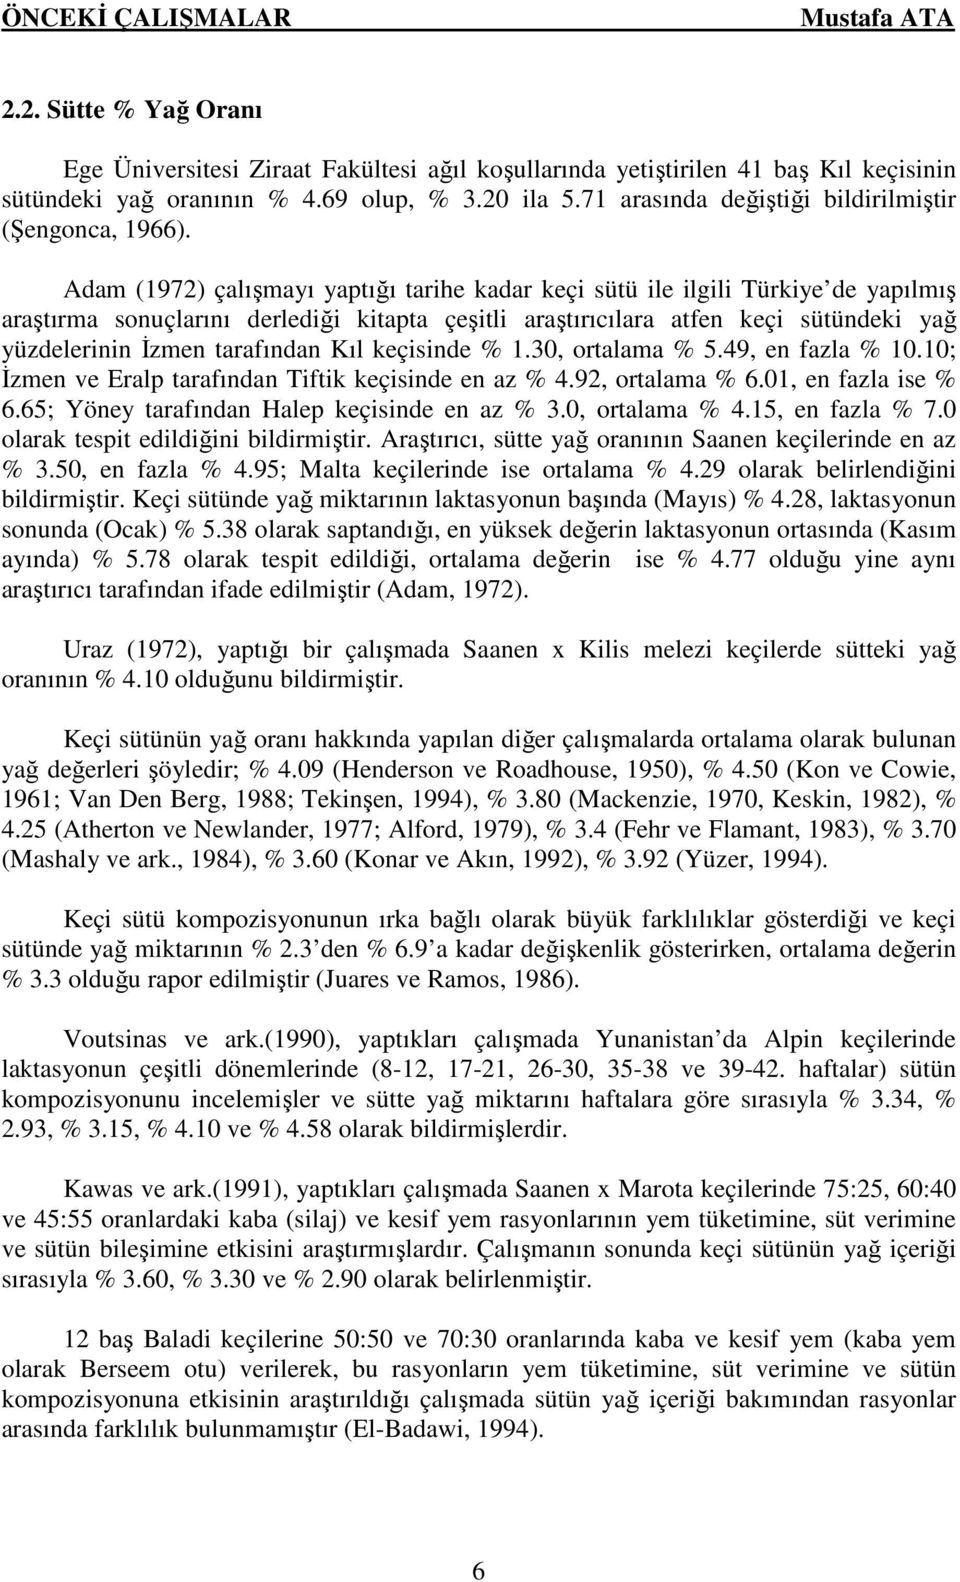 Adam (1972) çalışmayı yaptığı tarihe kadar keçi sütü ile ilgili Türkiye de yapılmış araştırma sonuçlarını derlediği kitapta çeşitli araştırıcılara atfen keçi sütündeki yağ yüzdelerinin Đzmen